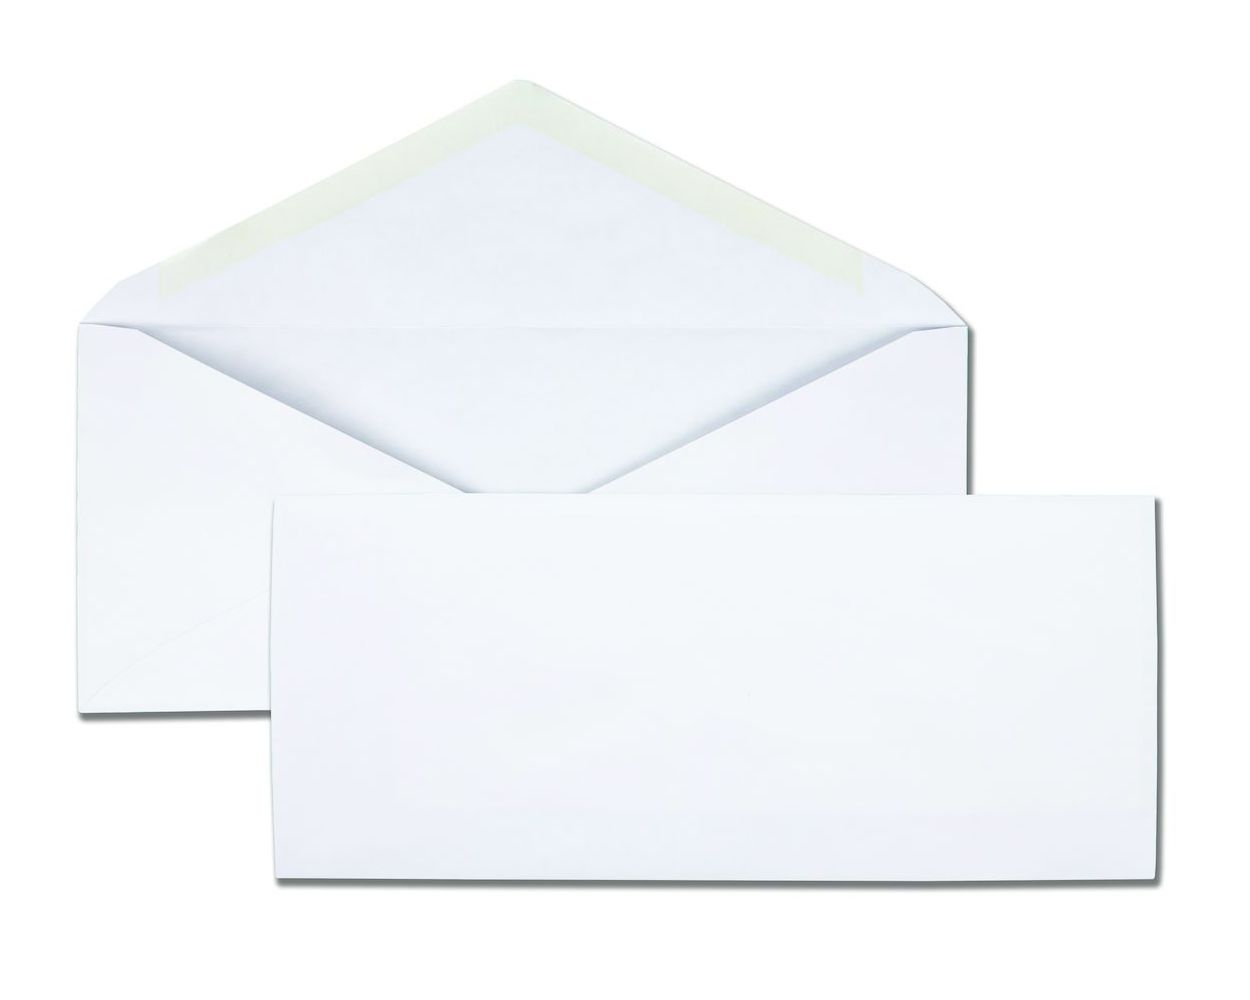 10 V Flap Business Envelopes Gummed Flap Great for High Speed Inserting Equipment White Wove 500 per Box